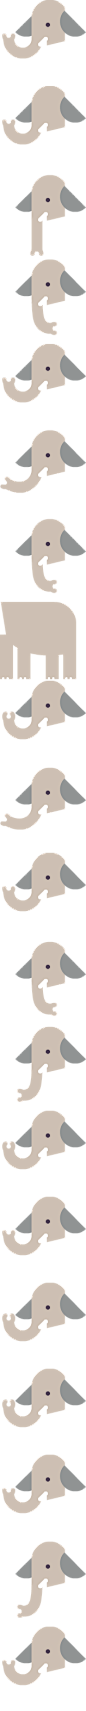 sprite-elephant.png (158×3144)